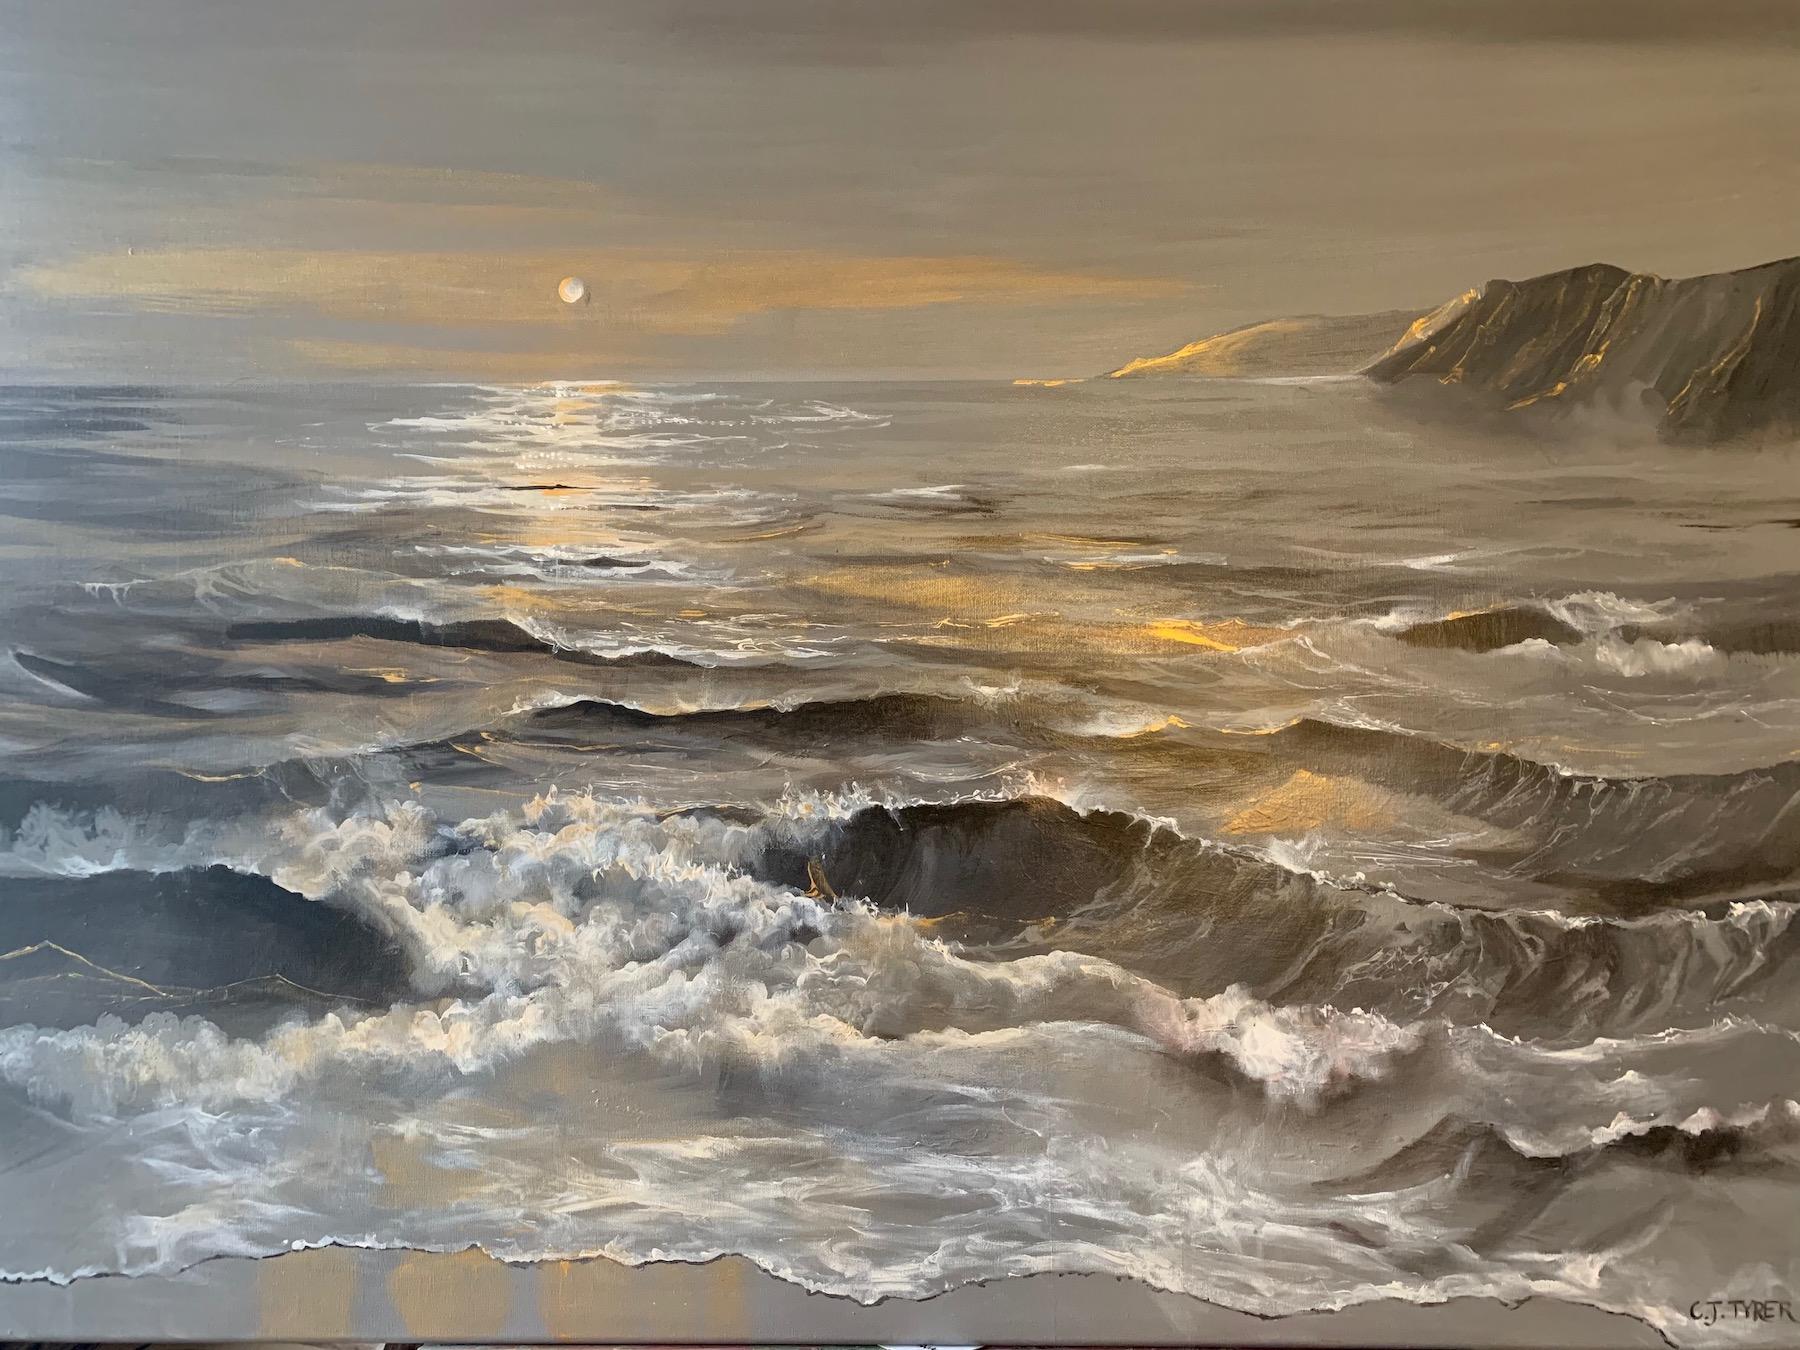 La mer agitée renferme une profonde passion par Carolyn Tryer
Signé par l'artiste
Acrylique sur toile.
Taille de l'œuvre : 80 x 100 cm
La lumière hypnotique sur les magnifiques vagues étincelait comme des diamants et le coucher de soleil